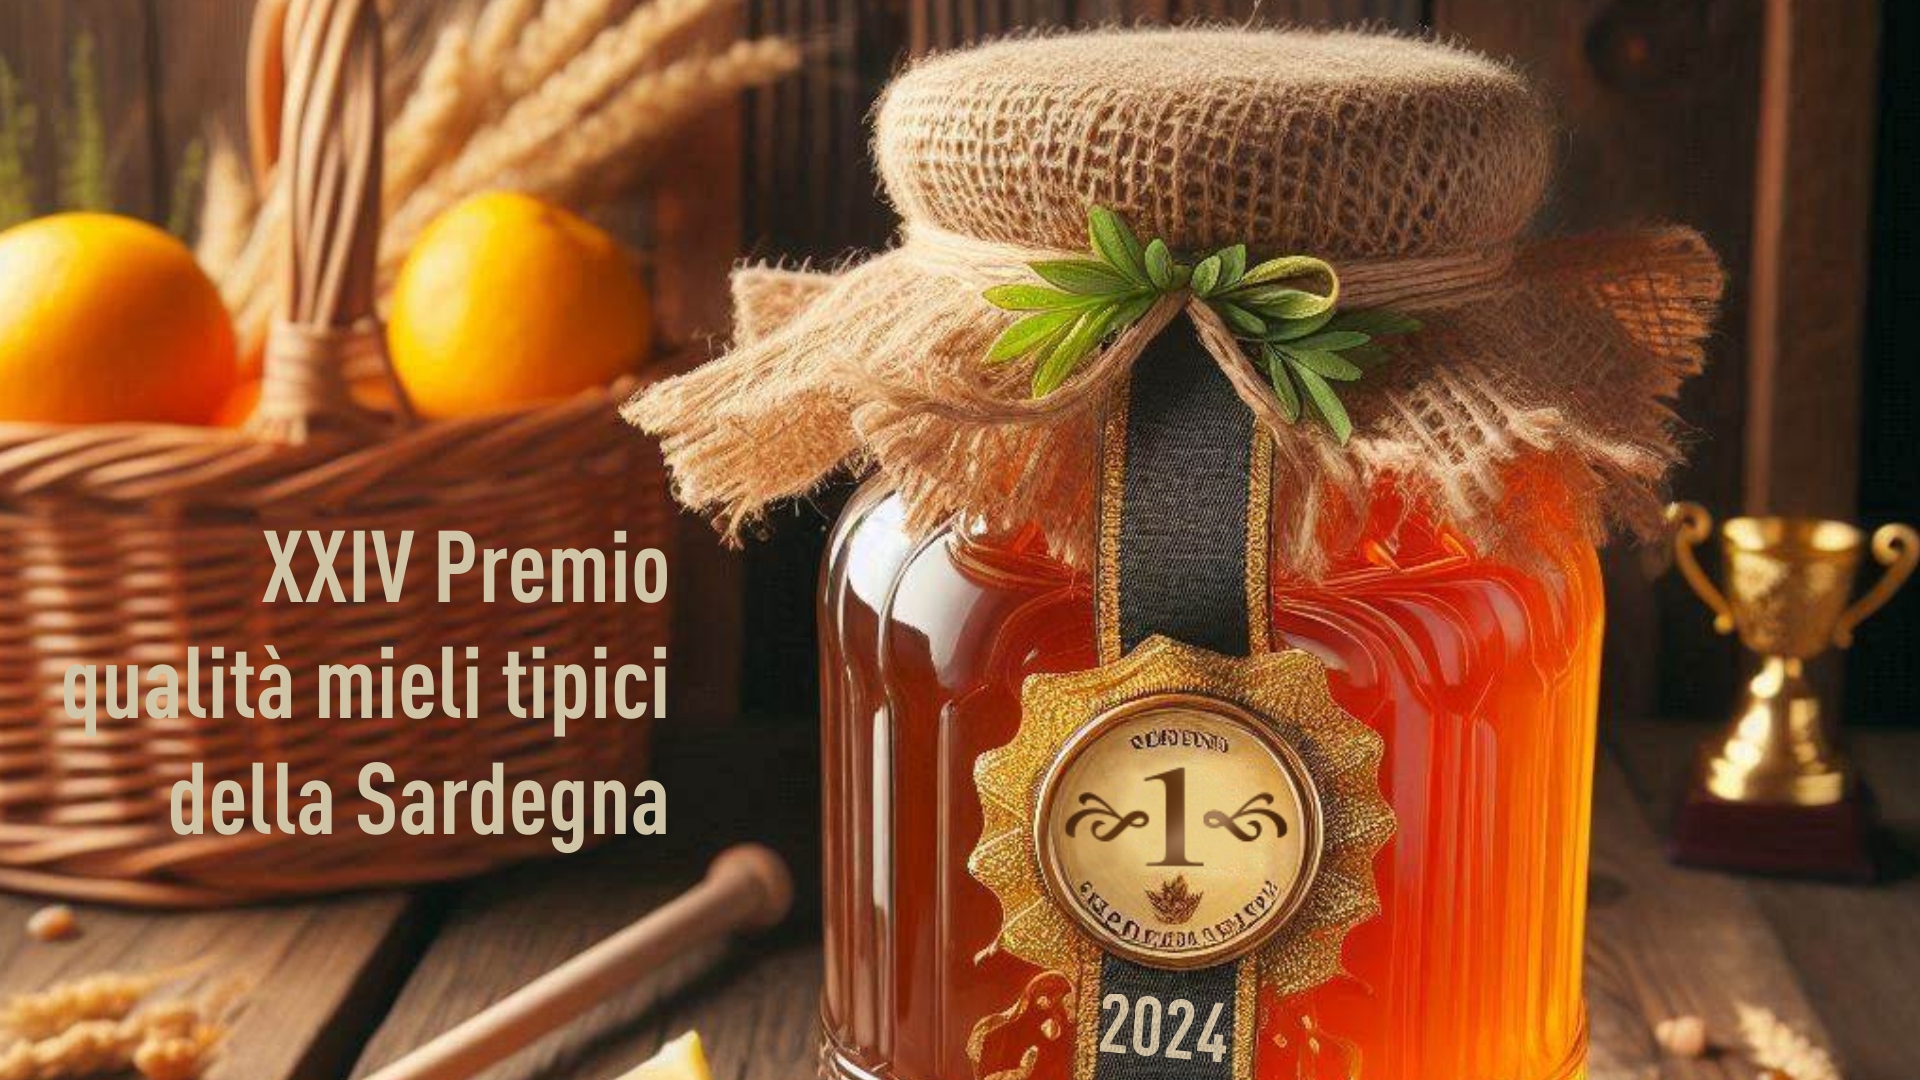 Premio qualità mieli tipici della Sardegna 2024 - XXIV edizione